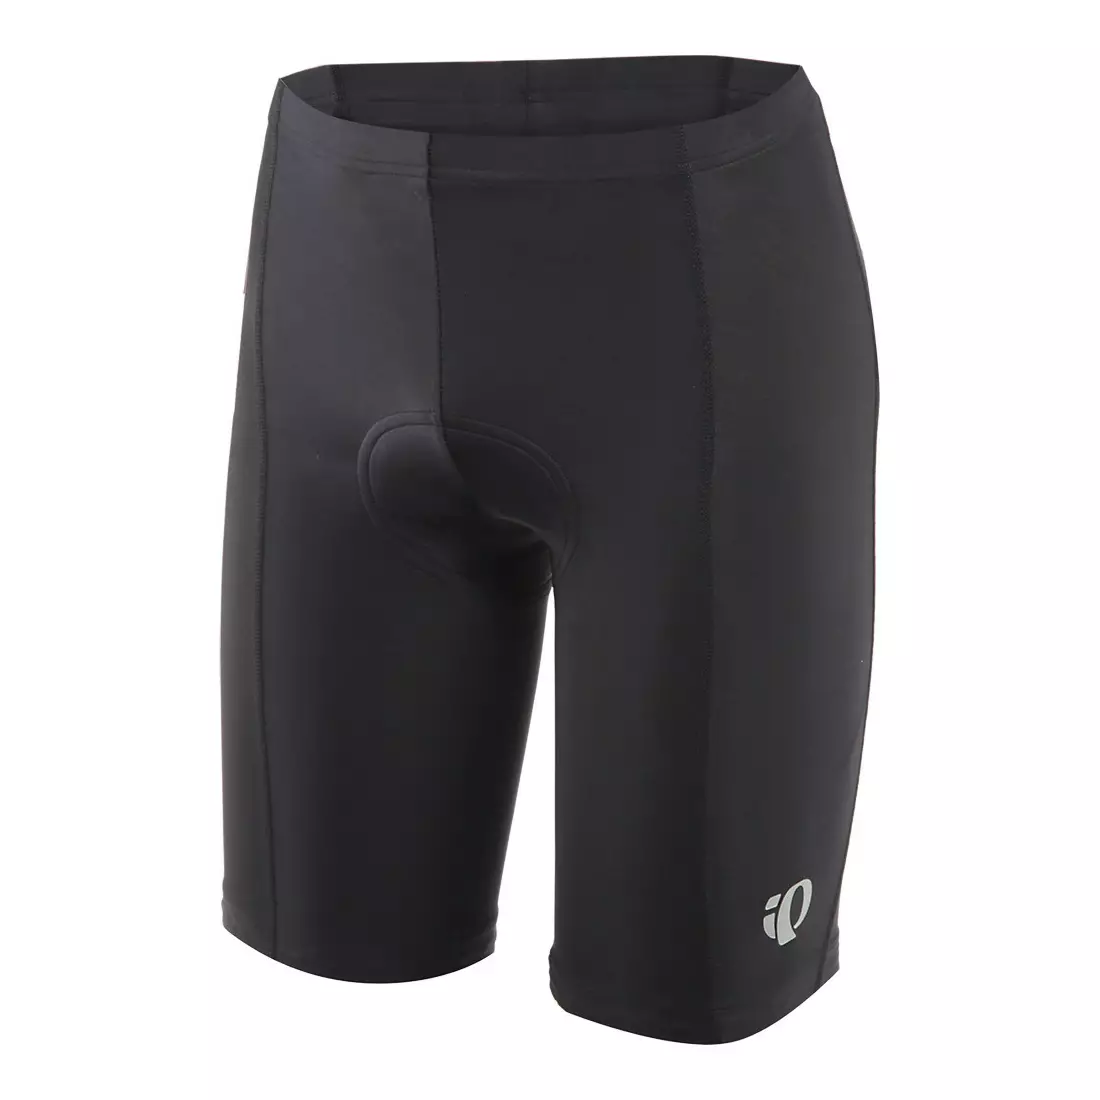 PEARL IZUMI QUEST men's cycling shorts, black 11111205-021